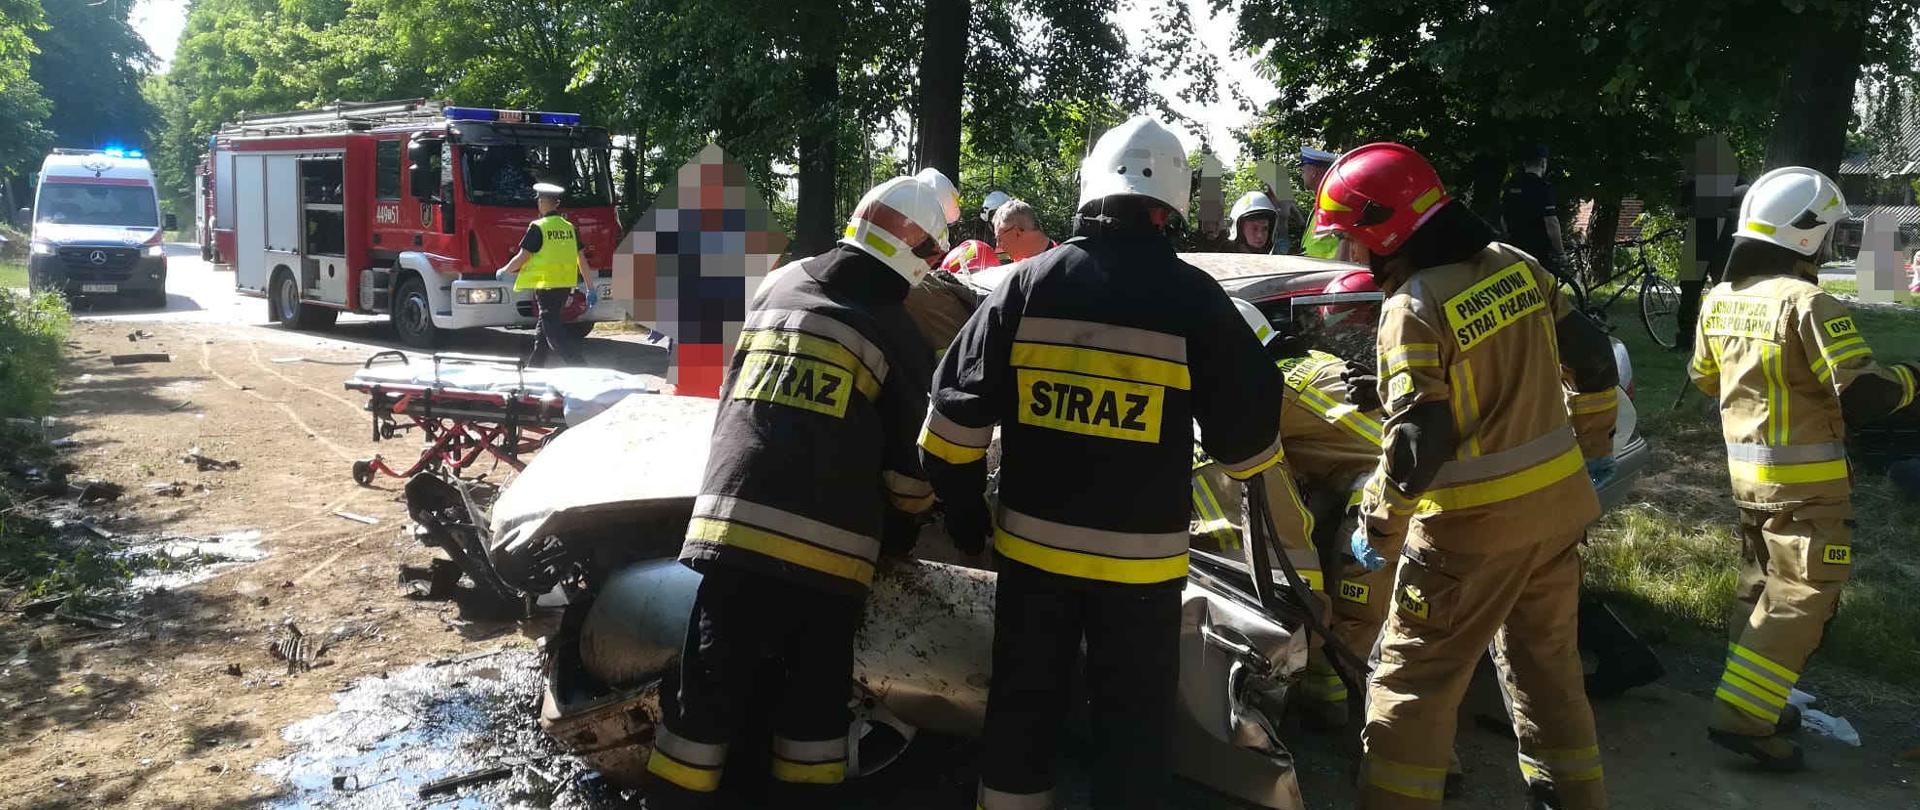 Zdjęcie przedstawia rozbity samochód i strażaków wykonujących dostęp do uwięzionej osoby przy pomocy narzędzi hydraulicznych.